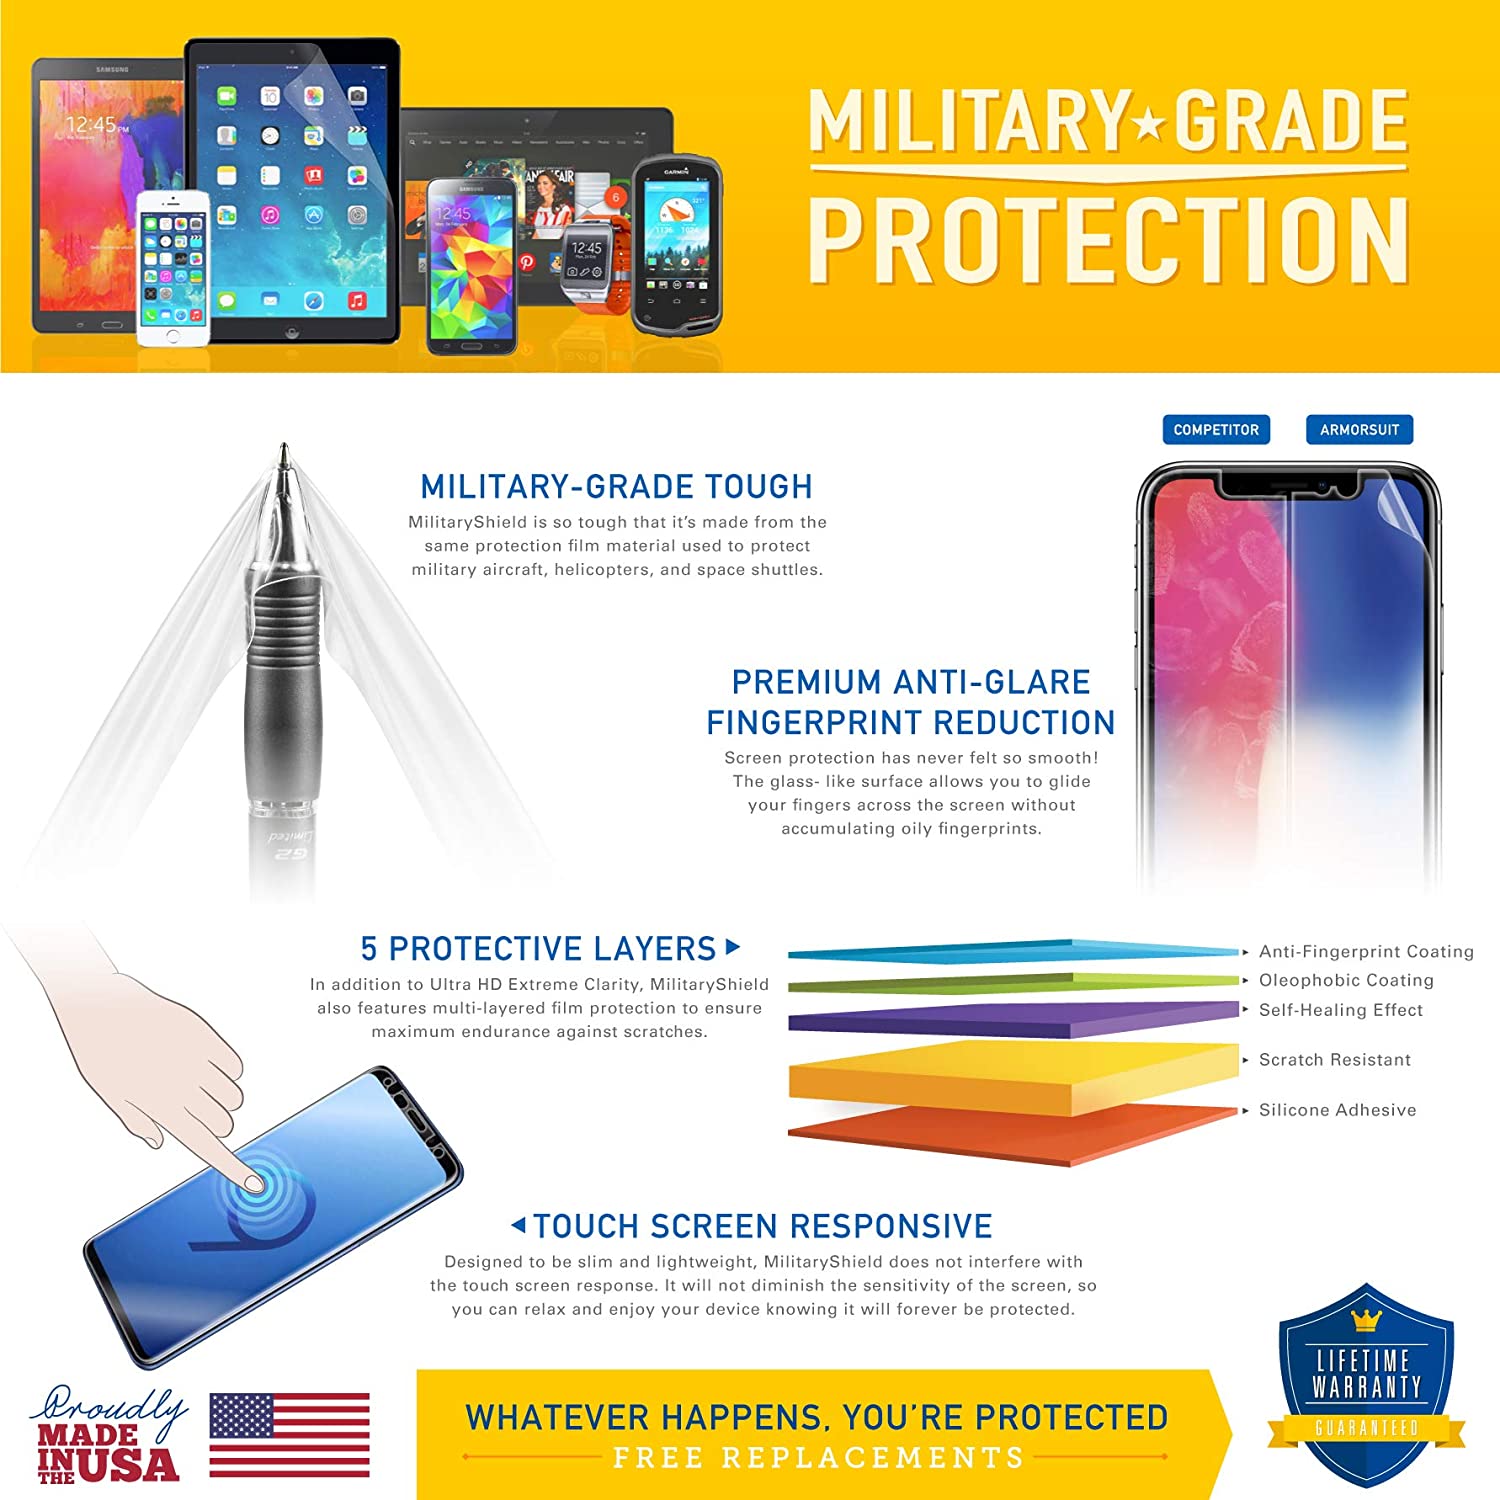 [2 Pack] Motorola Moto G4 Plus Screen Protector